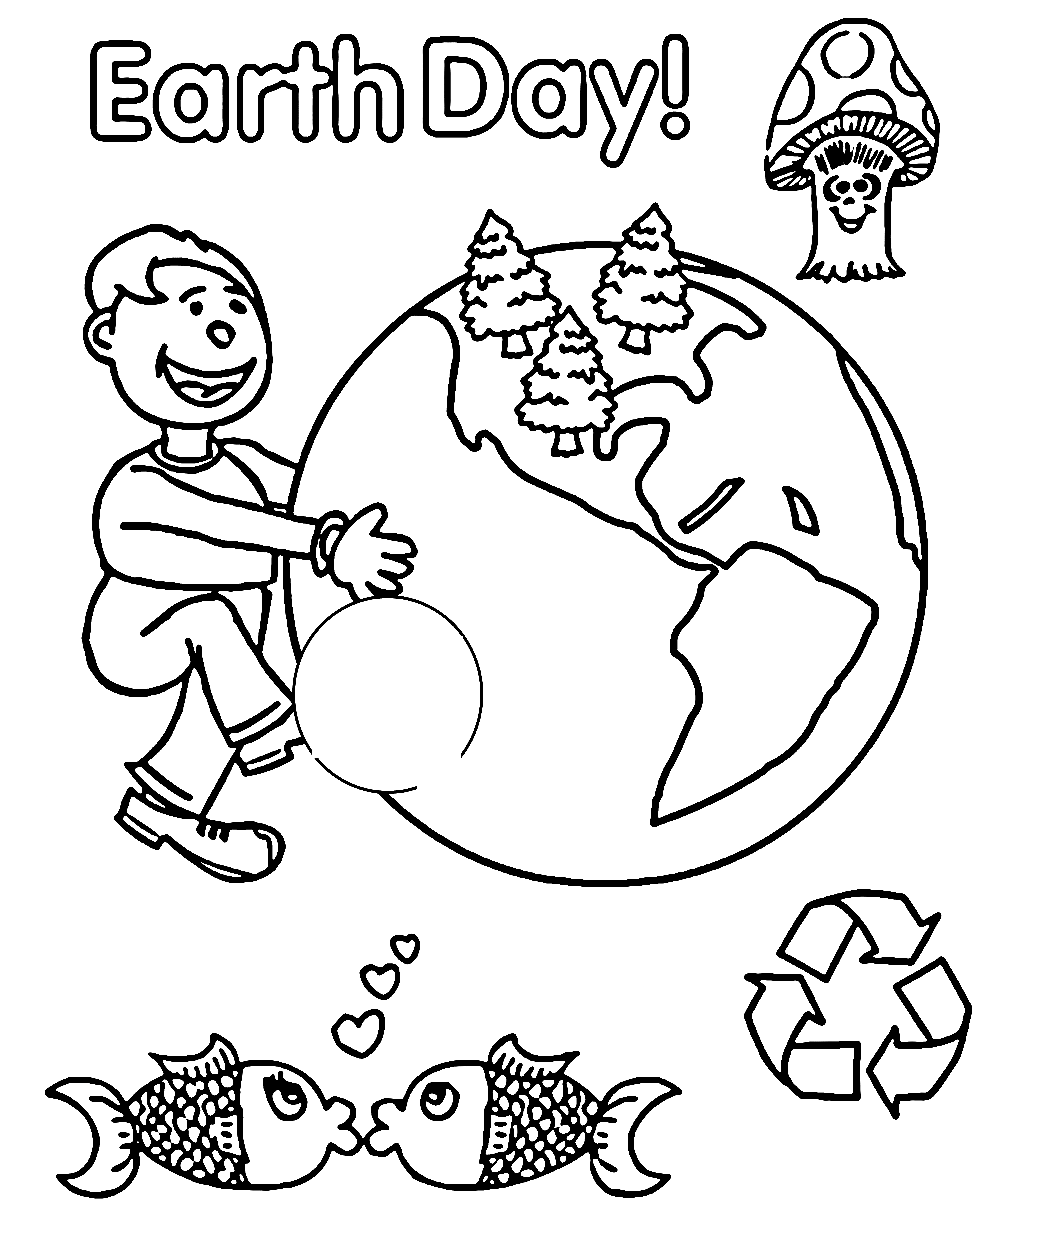 Herzlichen Glückwunsch zum Earth Day vom Earth Day